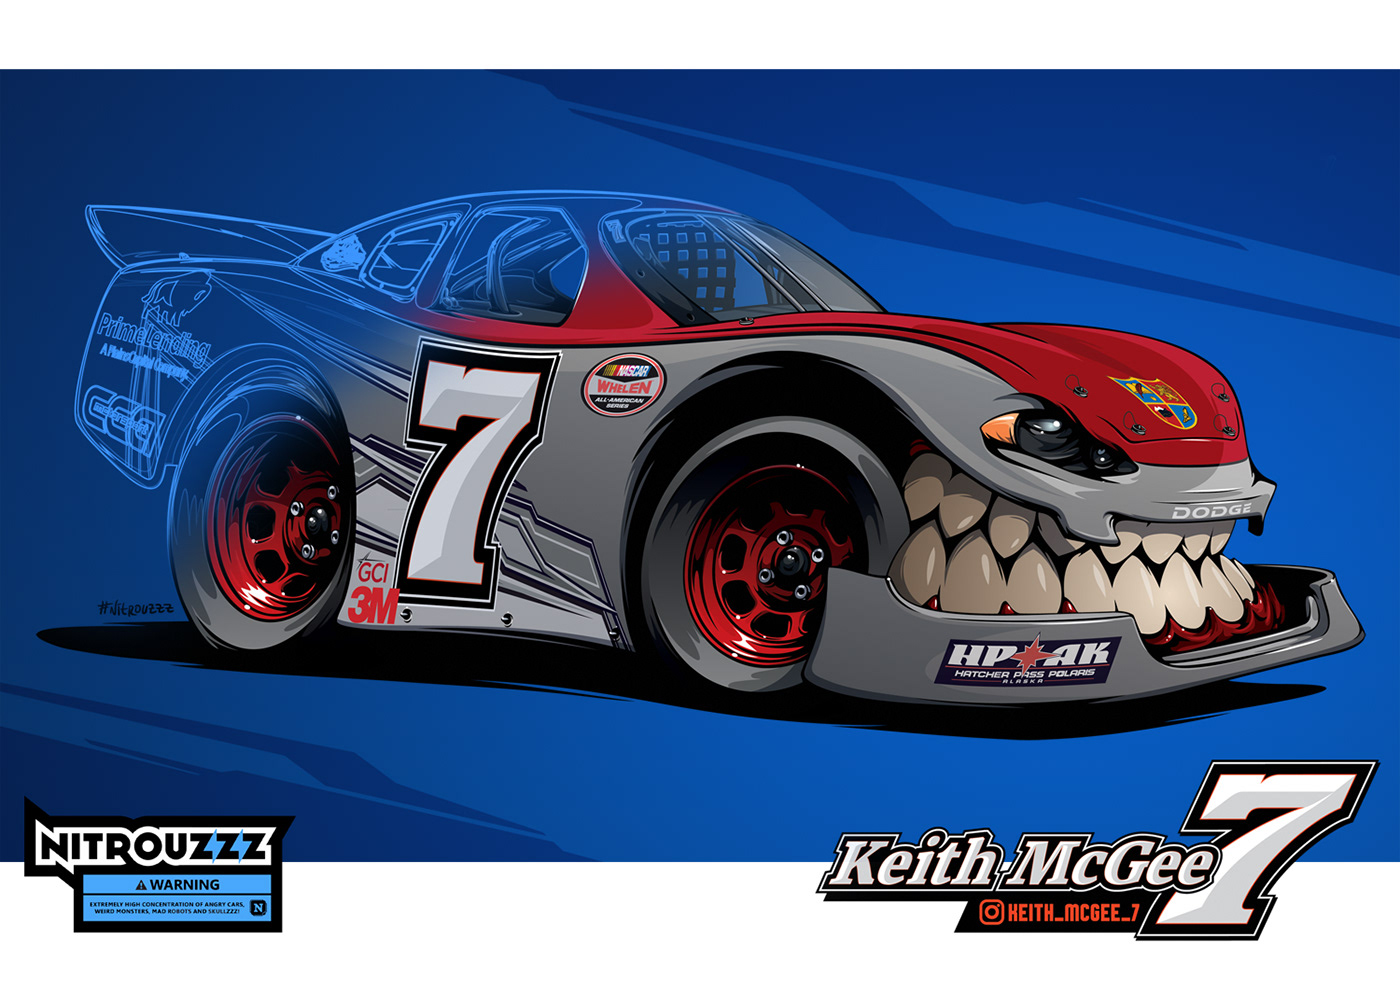 nitrouzzz beastedup car teeth car with teeth NASCAR race Racing